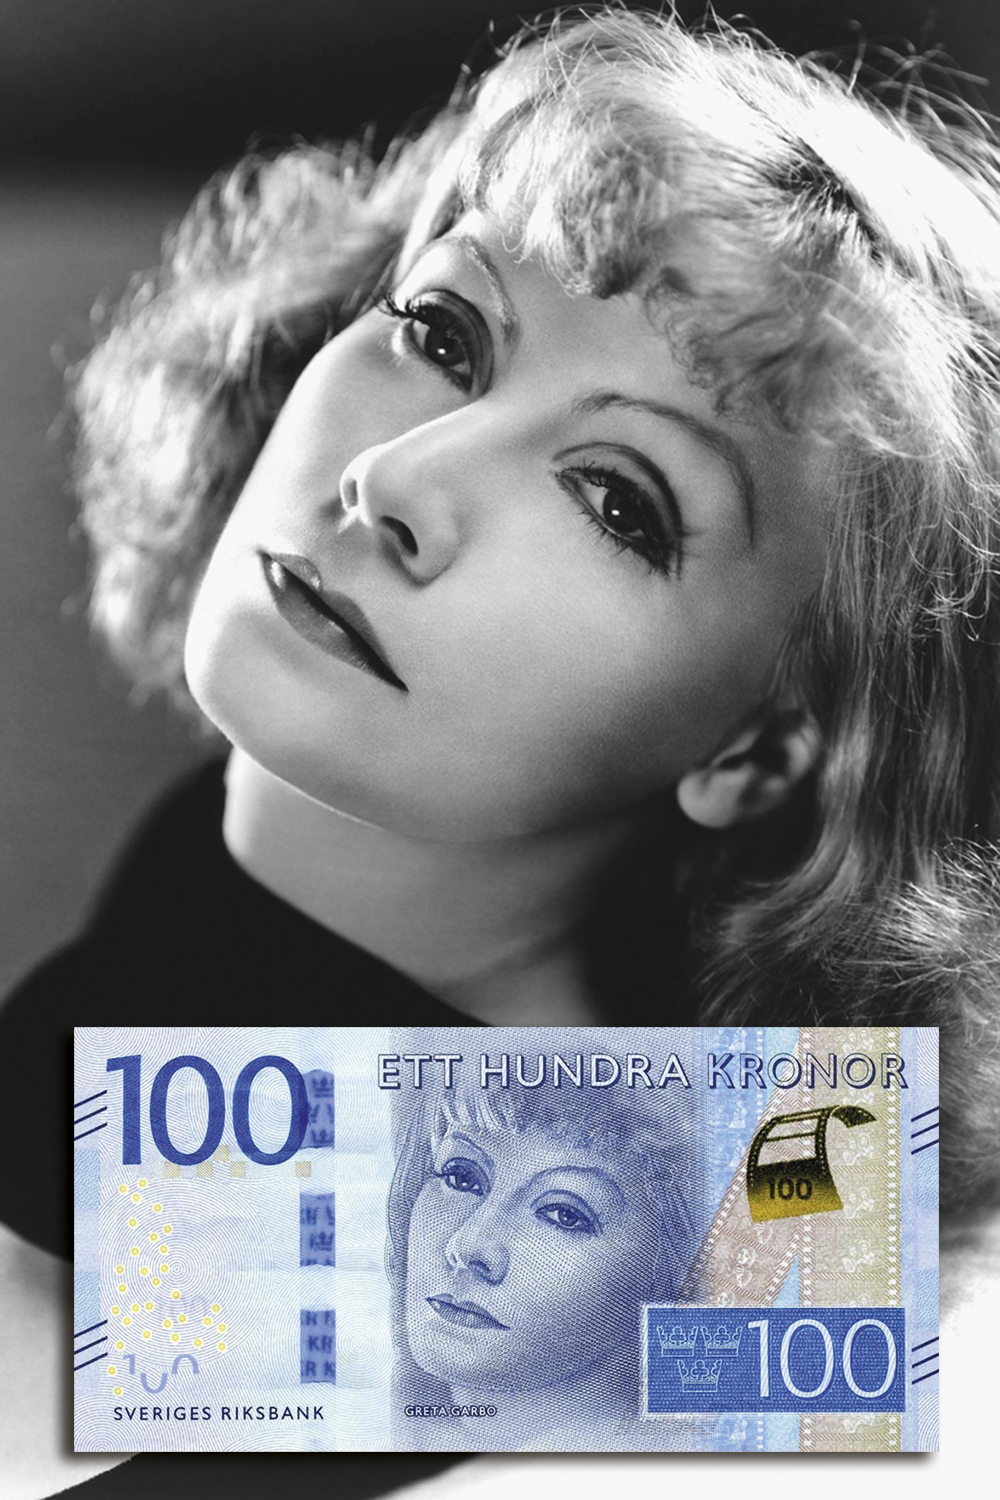 GRETA GARBO - A atriz, uma das maiores da história, é figura carimbada na cédula de 100 coroas suecas. Ingmar Bergman, seu conterrâneo, está na nota de 200 coroas -